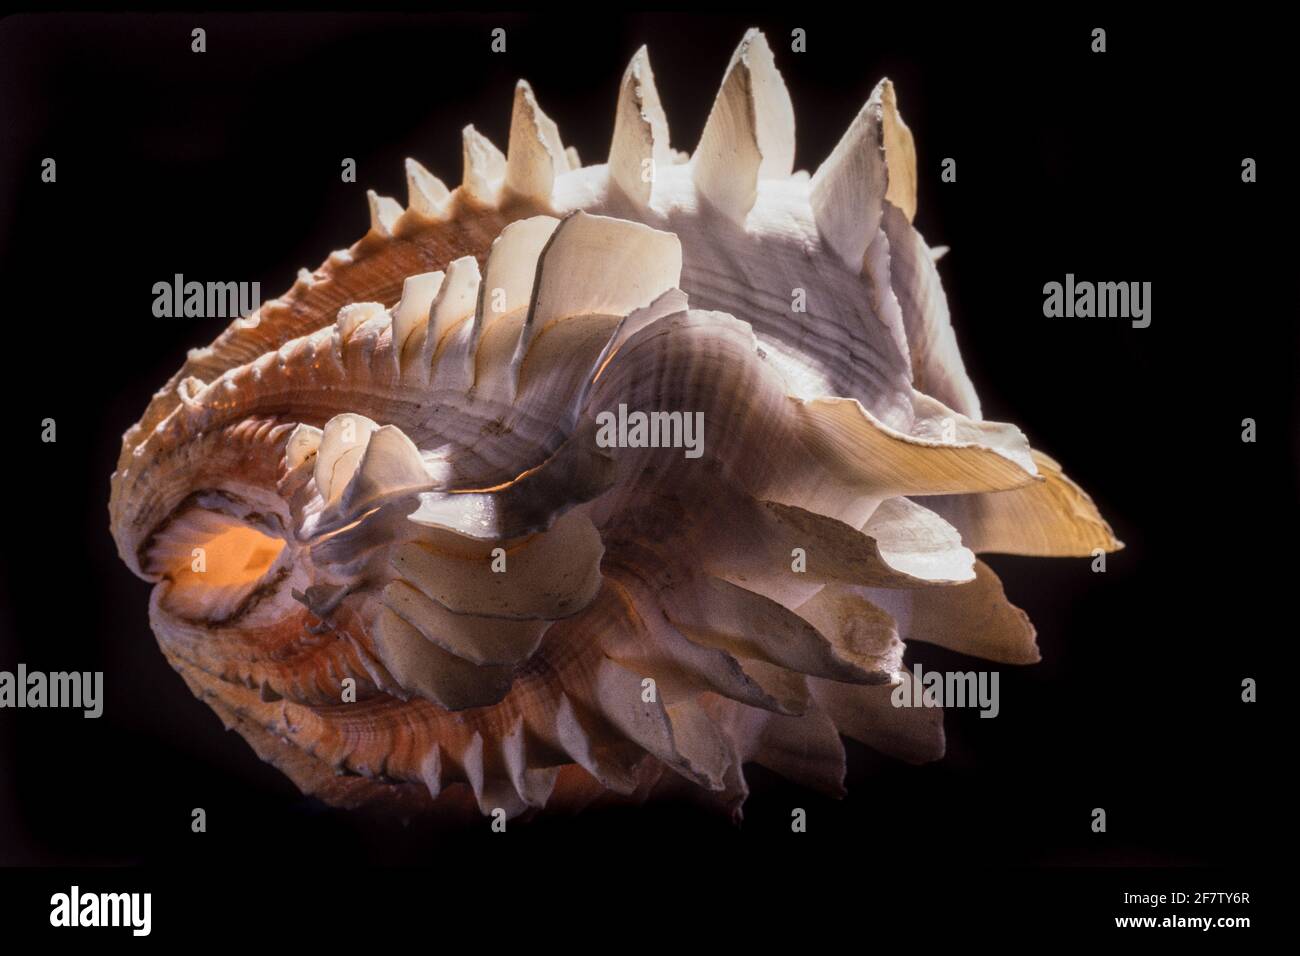 Detail zeigt die blattartigen Schuten oder Flöten einer tridacna-Muschel. Tridacna-Muscheln kommen im Indo-Pazifik und im Roten Meer vor. Stockfoto